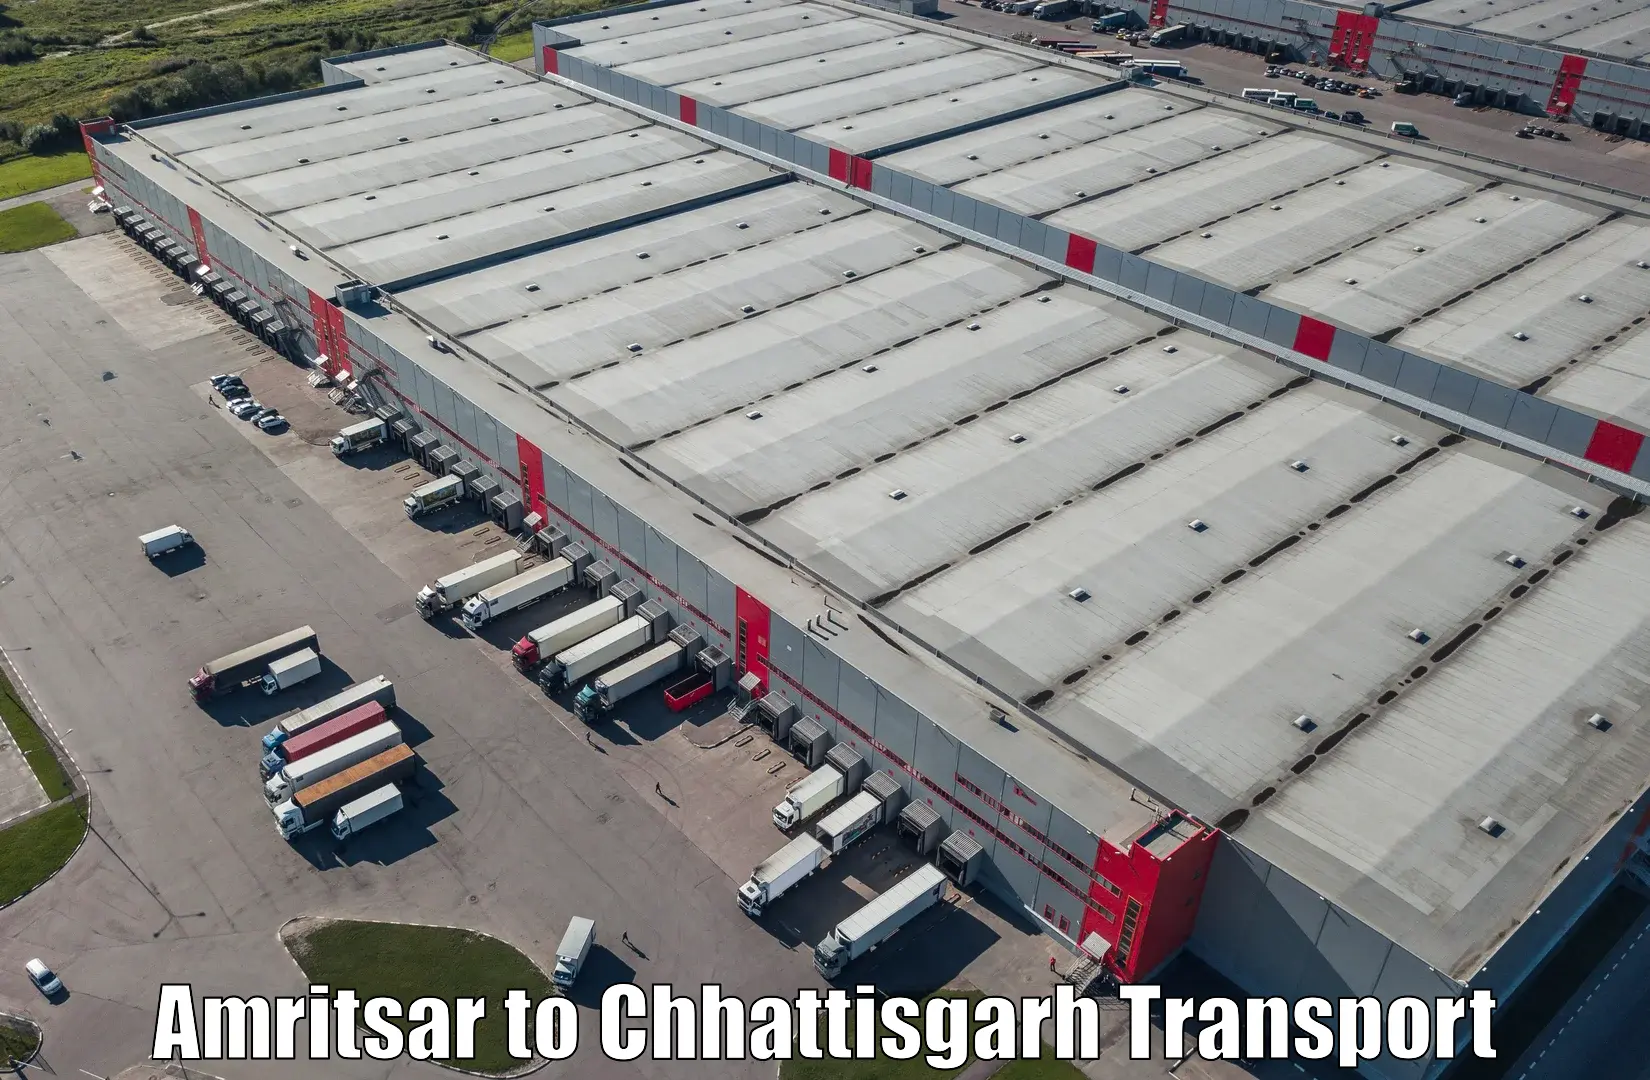 Transportation solution services Amritsar to Berla